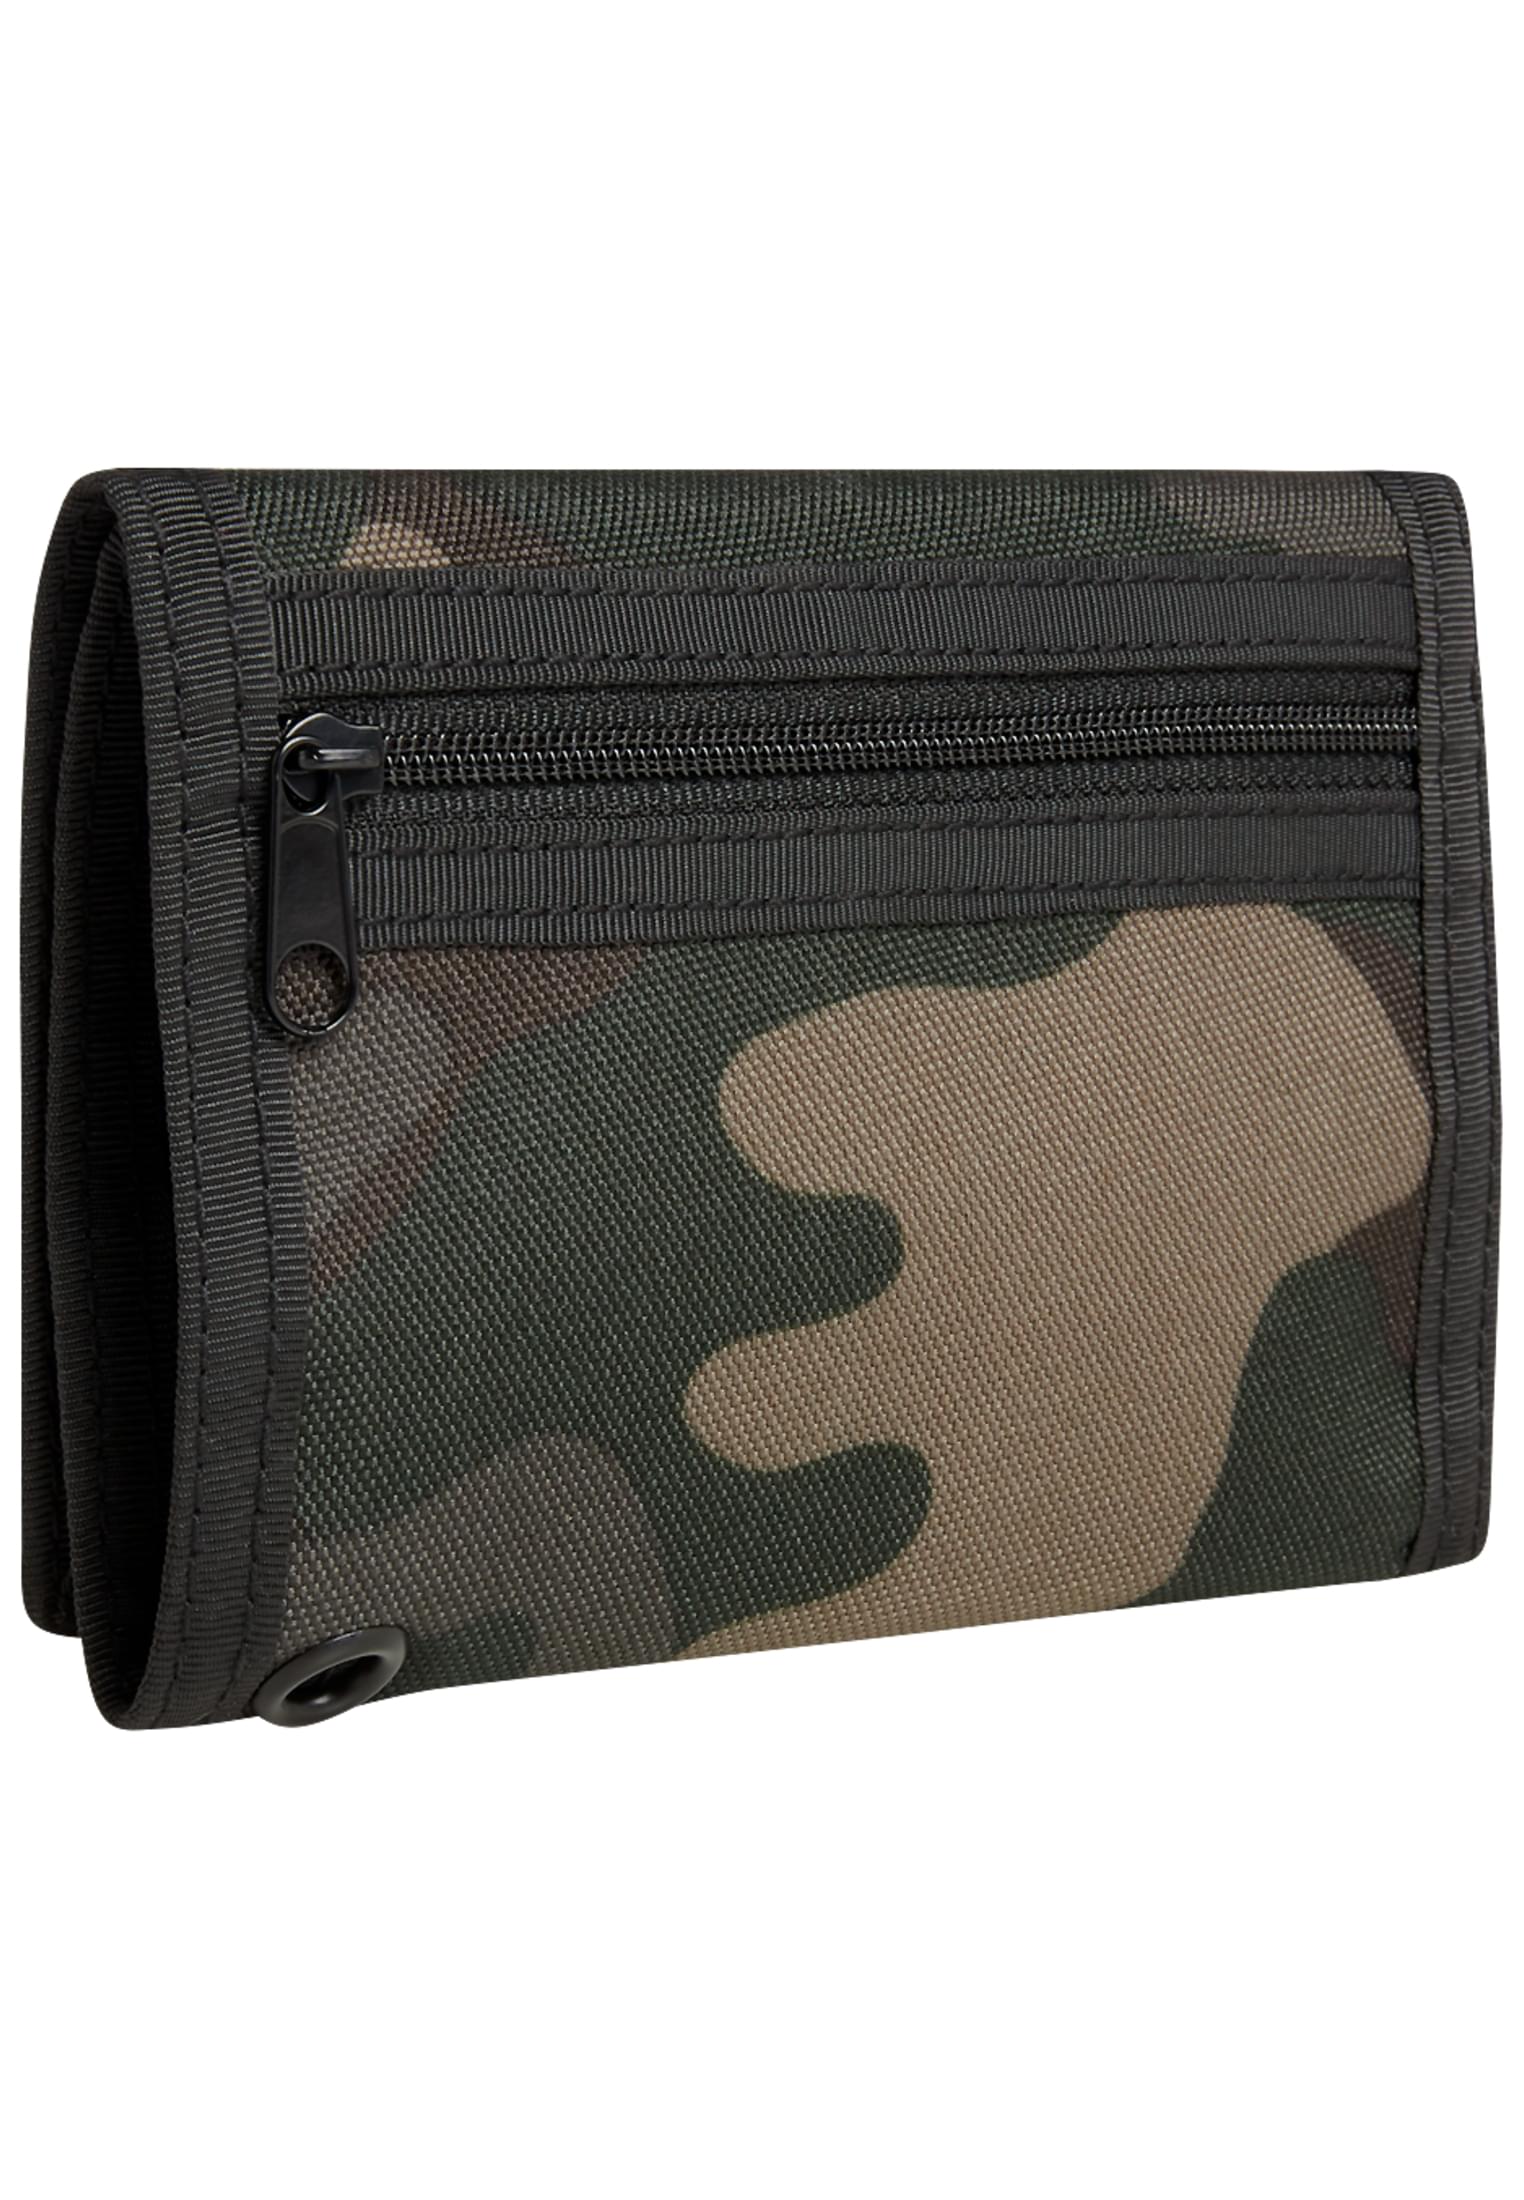 Taschen Wallet Three in Farbe darkcamo